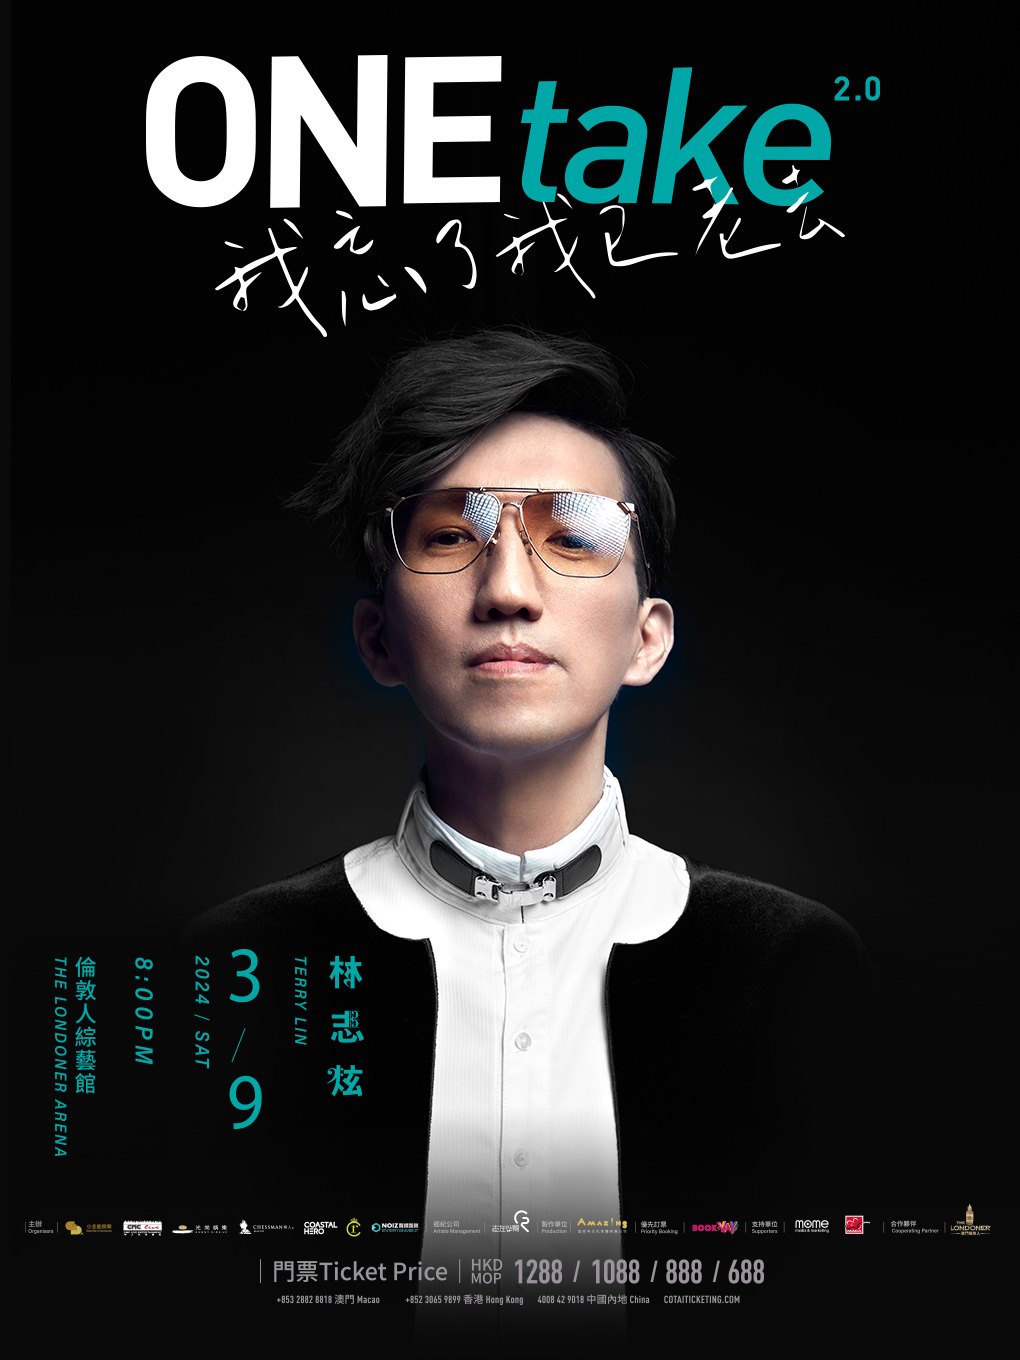 [中国澳门]林志炫 ONEtake2.0《我忘了我已老去》巡回演唱会-澳门站